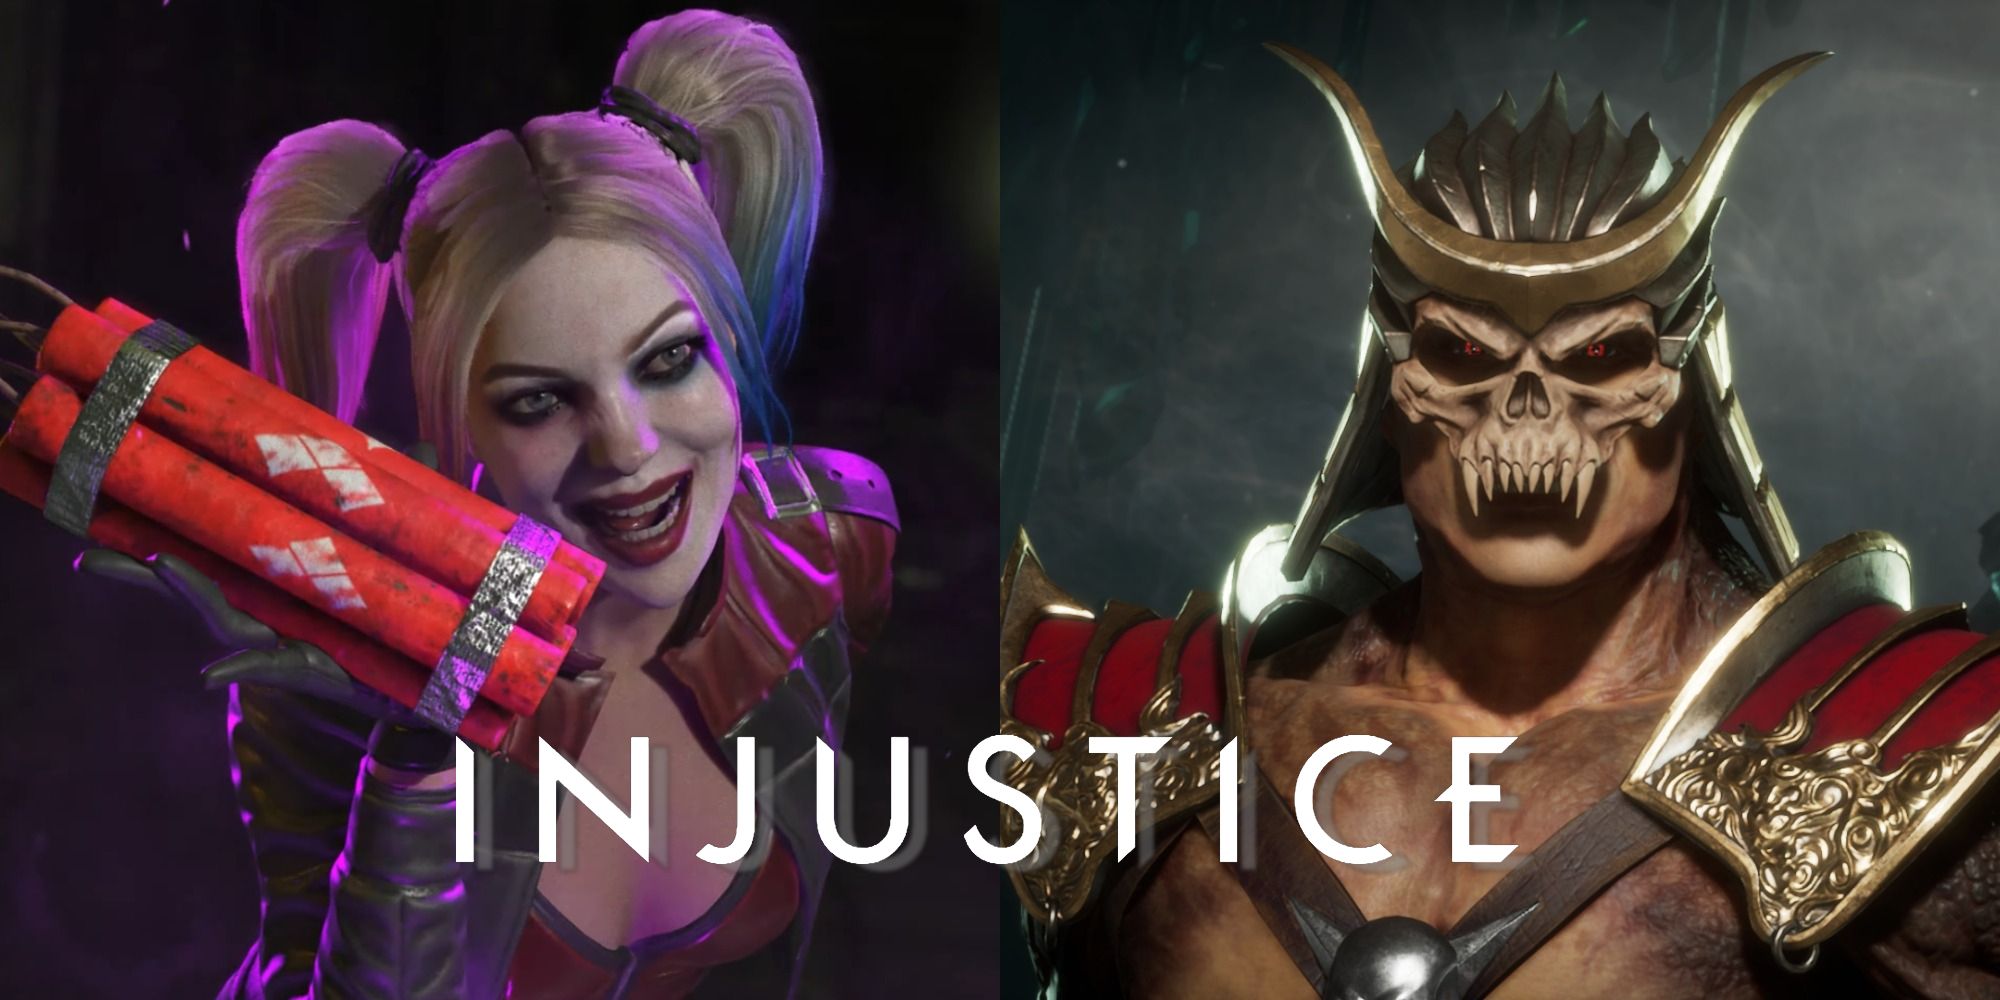 Mortal Kombat 11 vs INJUSTICE vs INJUSTICE 2 vs MKvsDCU - Joker Character  Model Comparison 